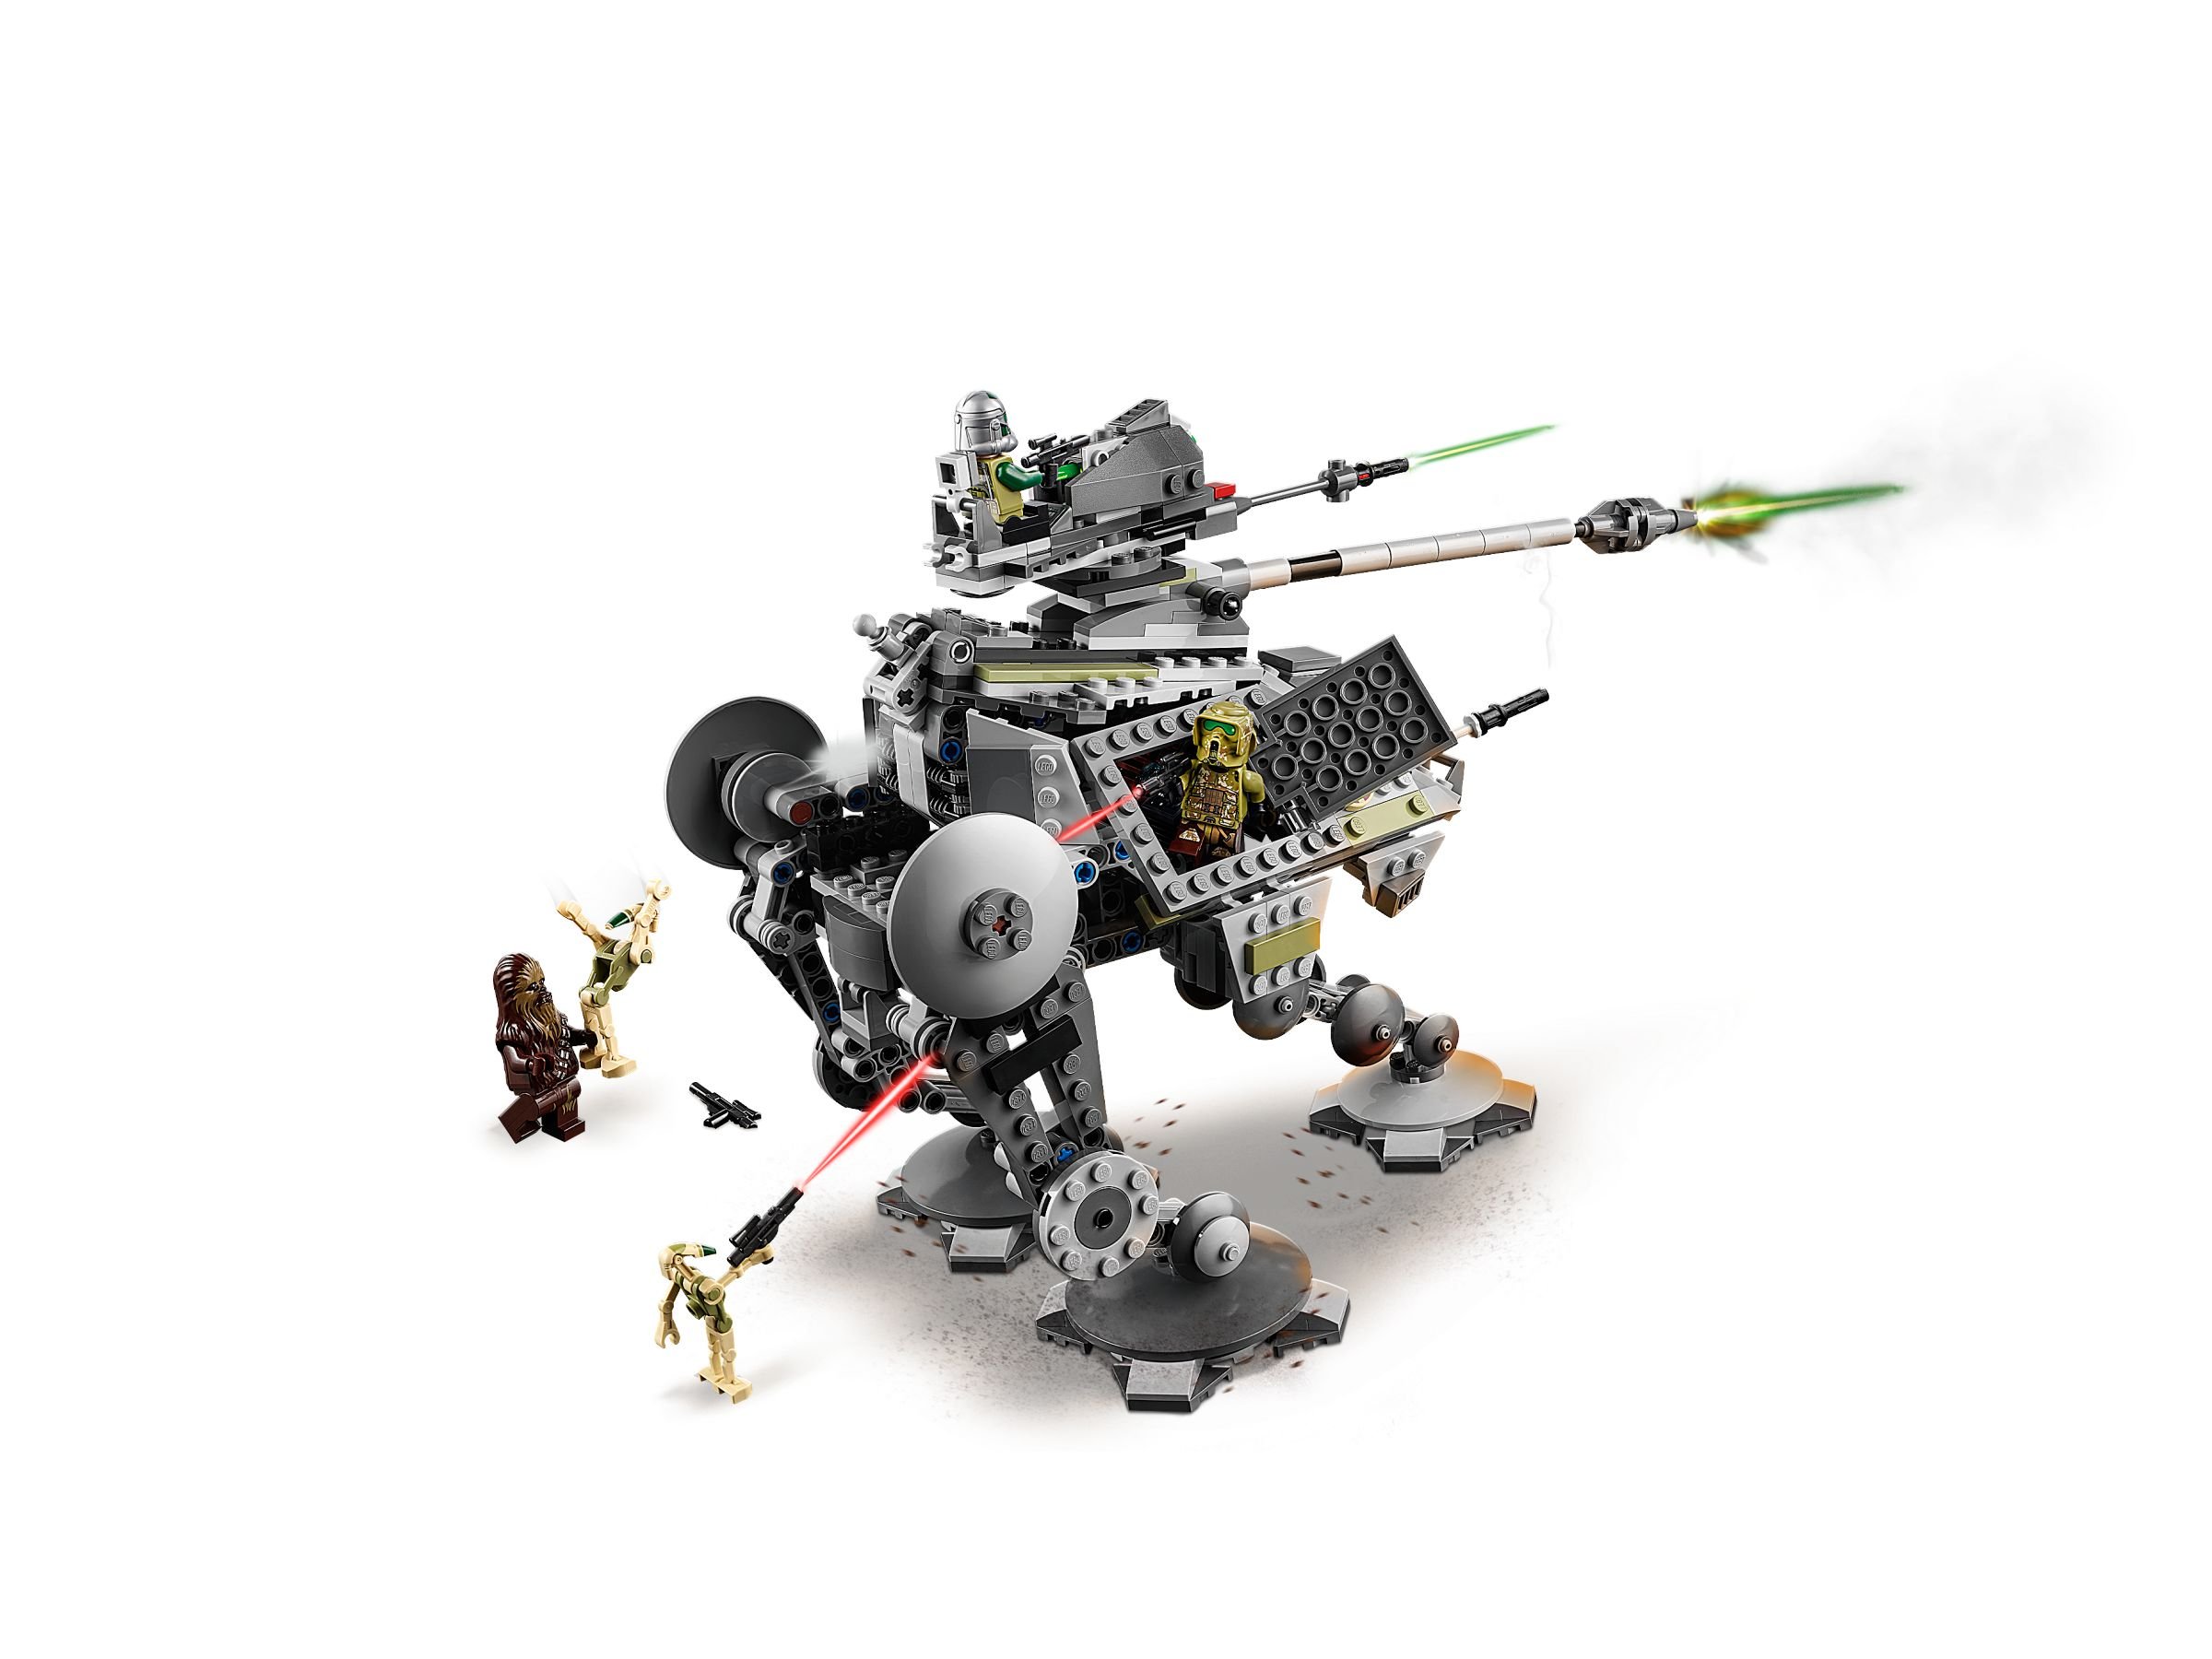 LEGO Star Wars 75234 AT-AP Walker LEGO_75234_alt3.jpg